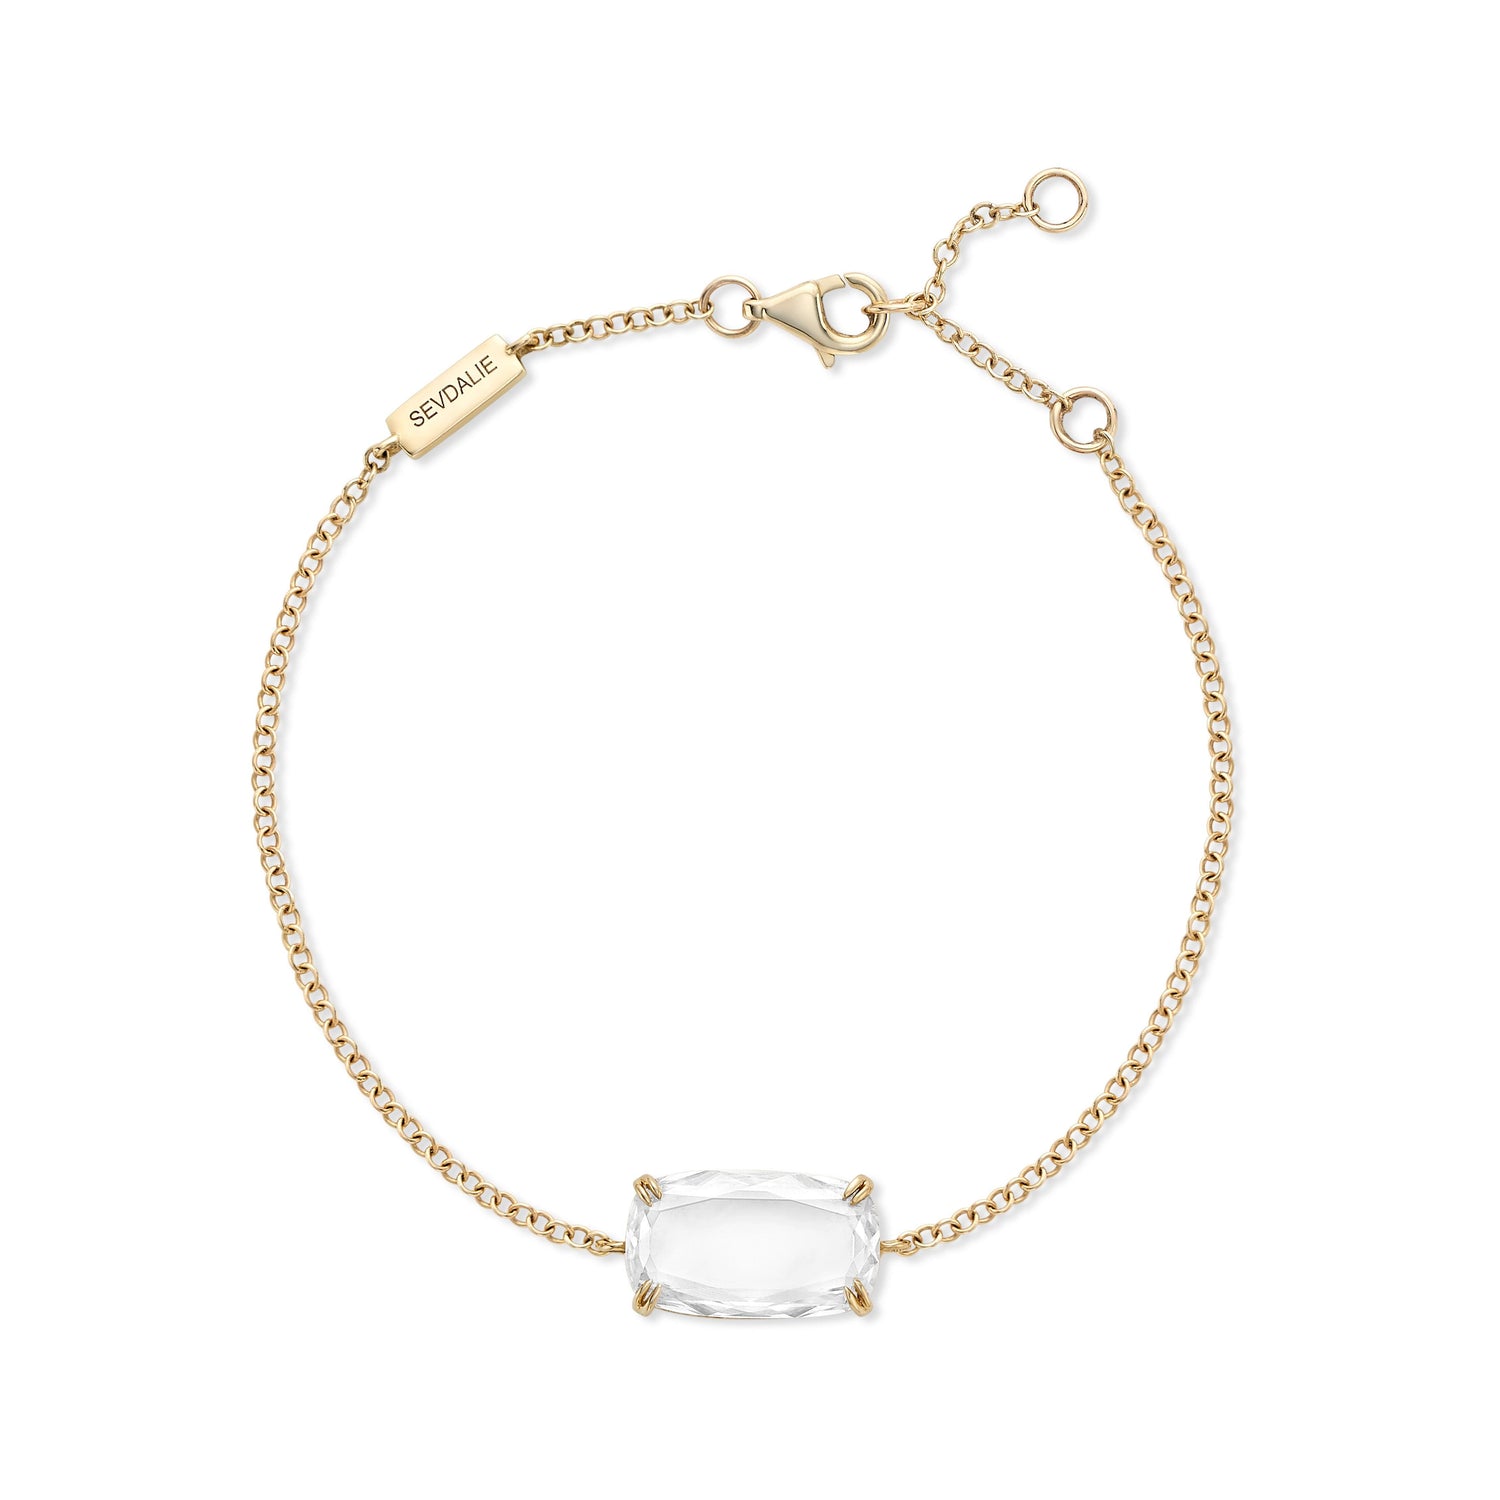 Diamond Bracelet, Solitaire Diamond Bracelet, 14k 18k Solid Gold Diamond  Bracelet, Simple Anniversary Gift Bracelet, Gift for Her - Etsy